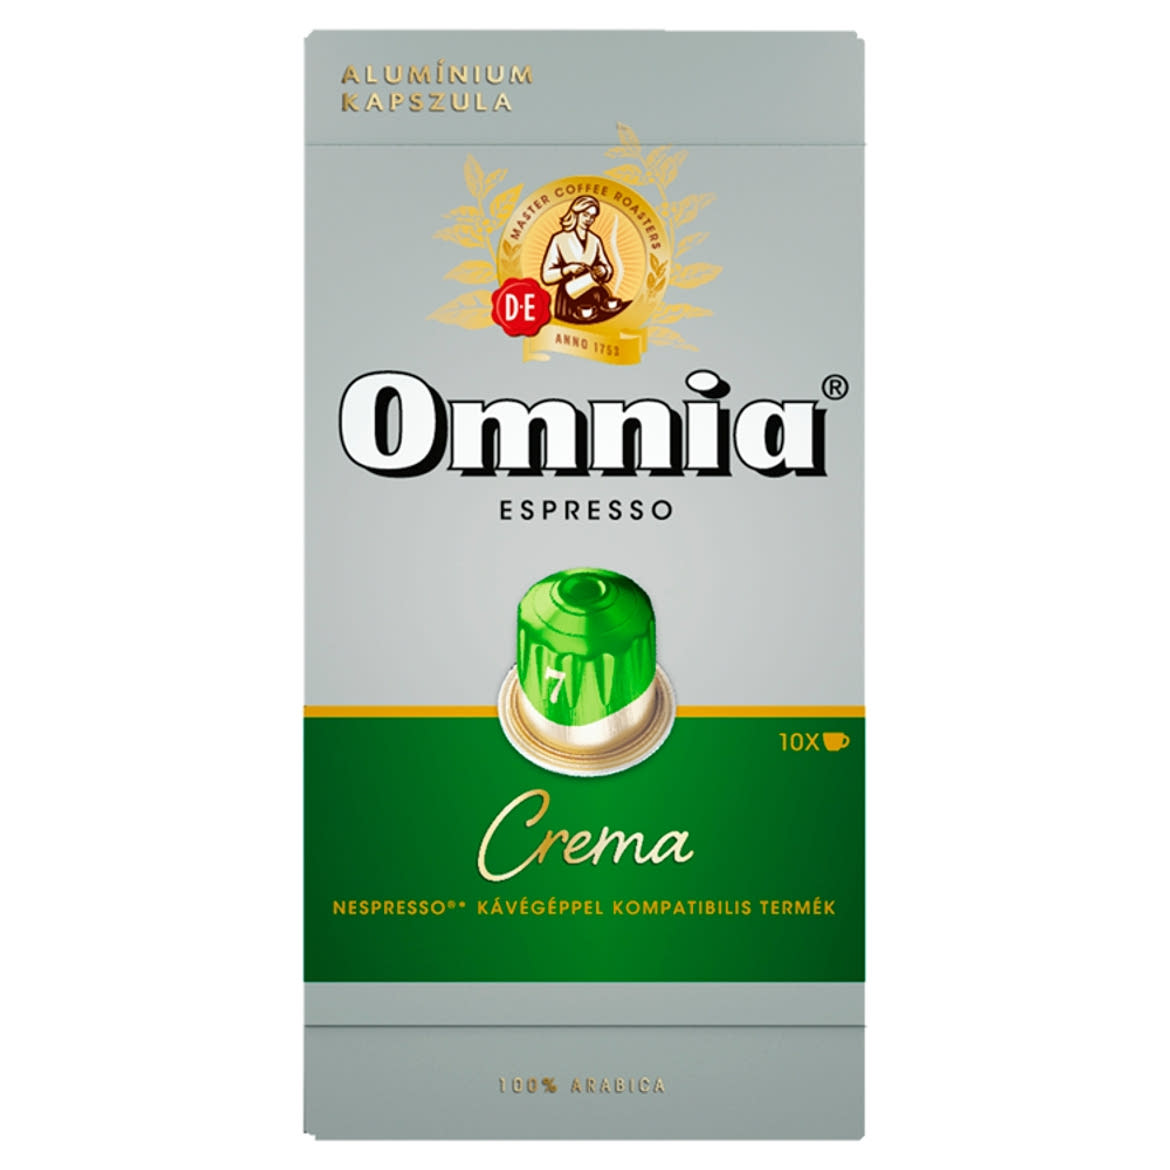 Douwe Egberts Omnia Espresso Crema őrölt-pörkölt kávé kapszulában 10 db